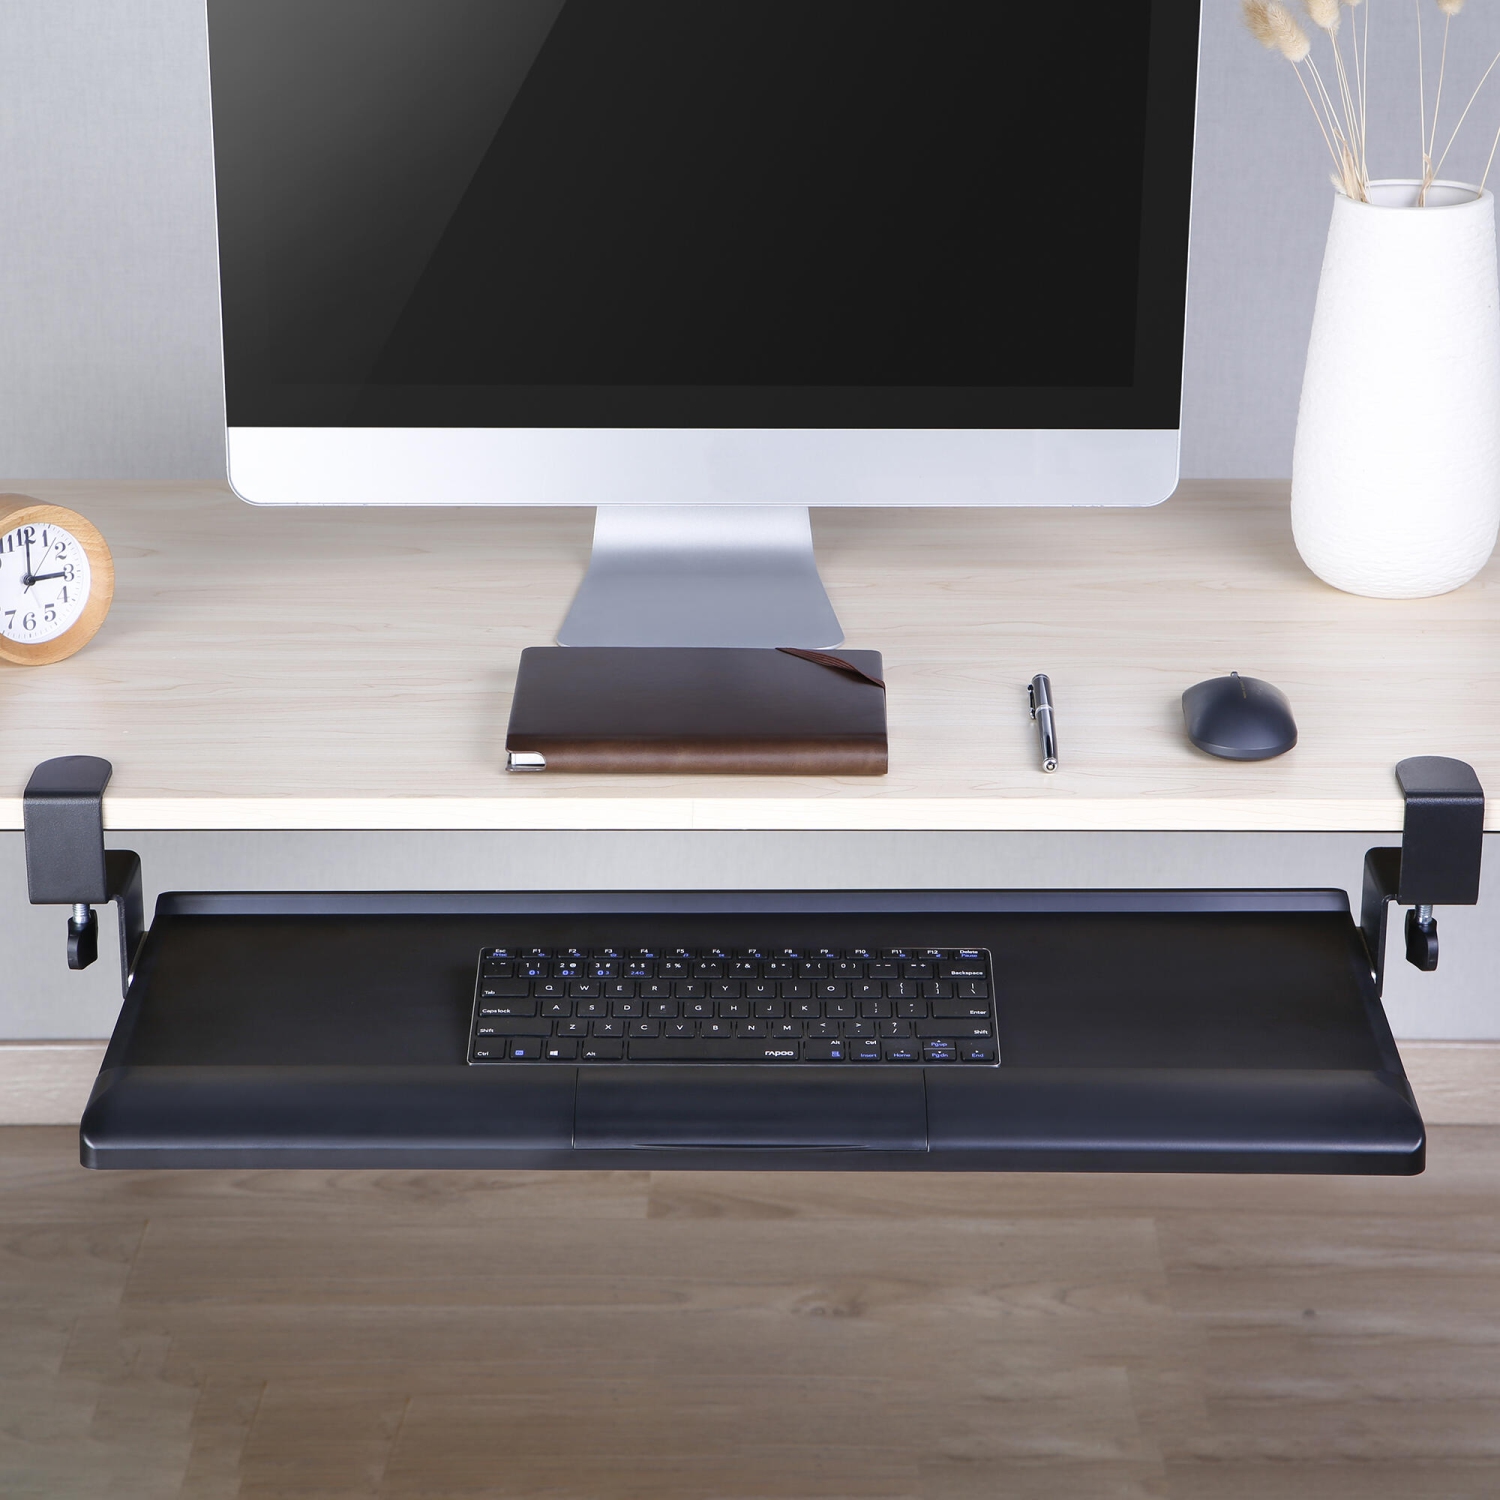 Plateau clavier xergonomique - support clavier - idéal pour les petits  bureaux 